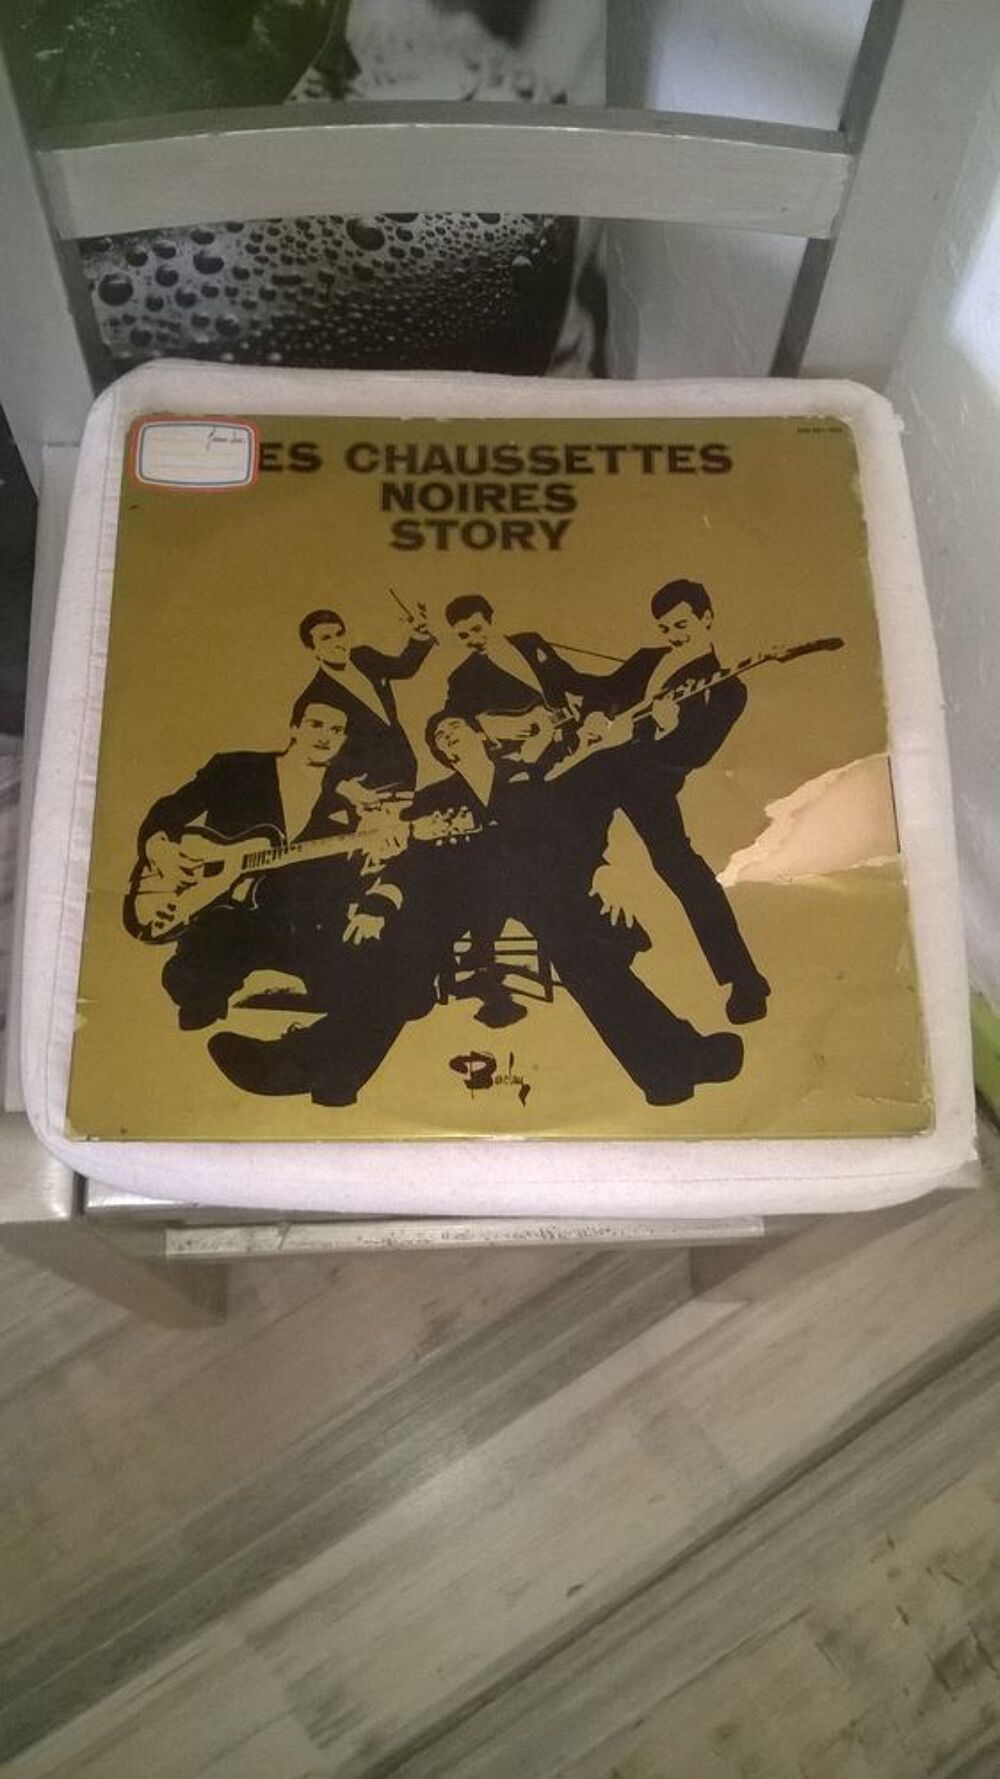 Vinyle Les Chaussettes Noires avec Eddy Mitchell
Story (Vol CD et vinyles